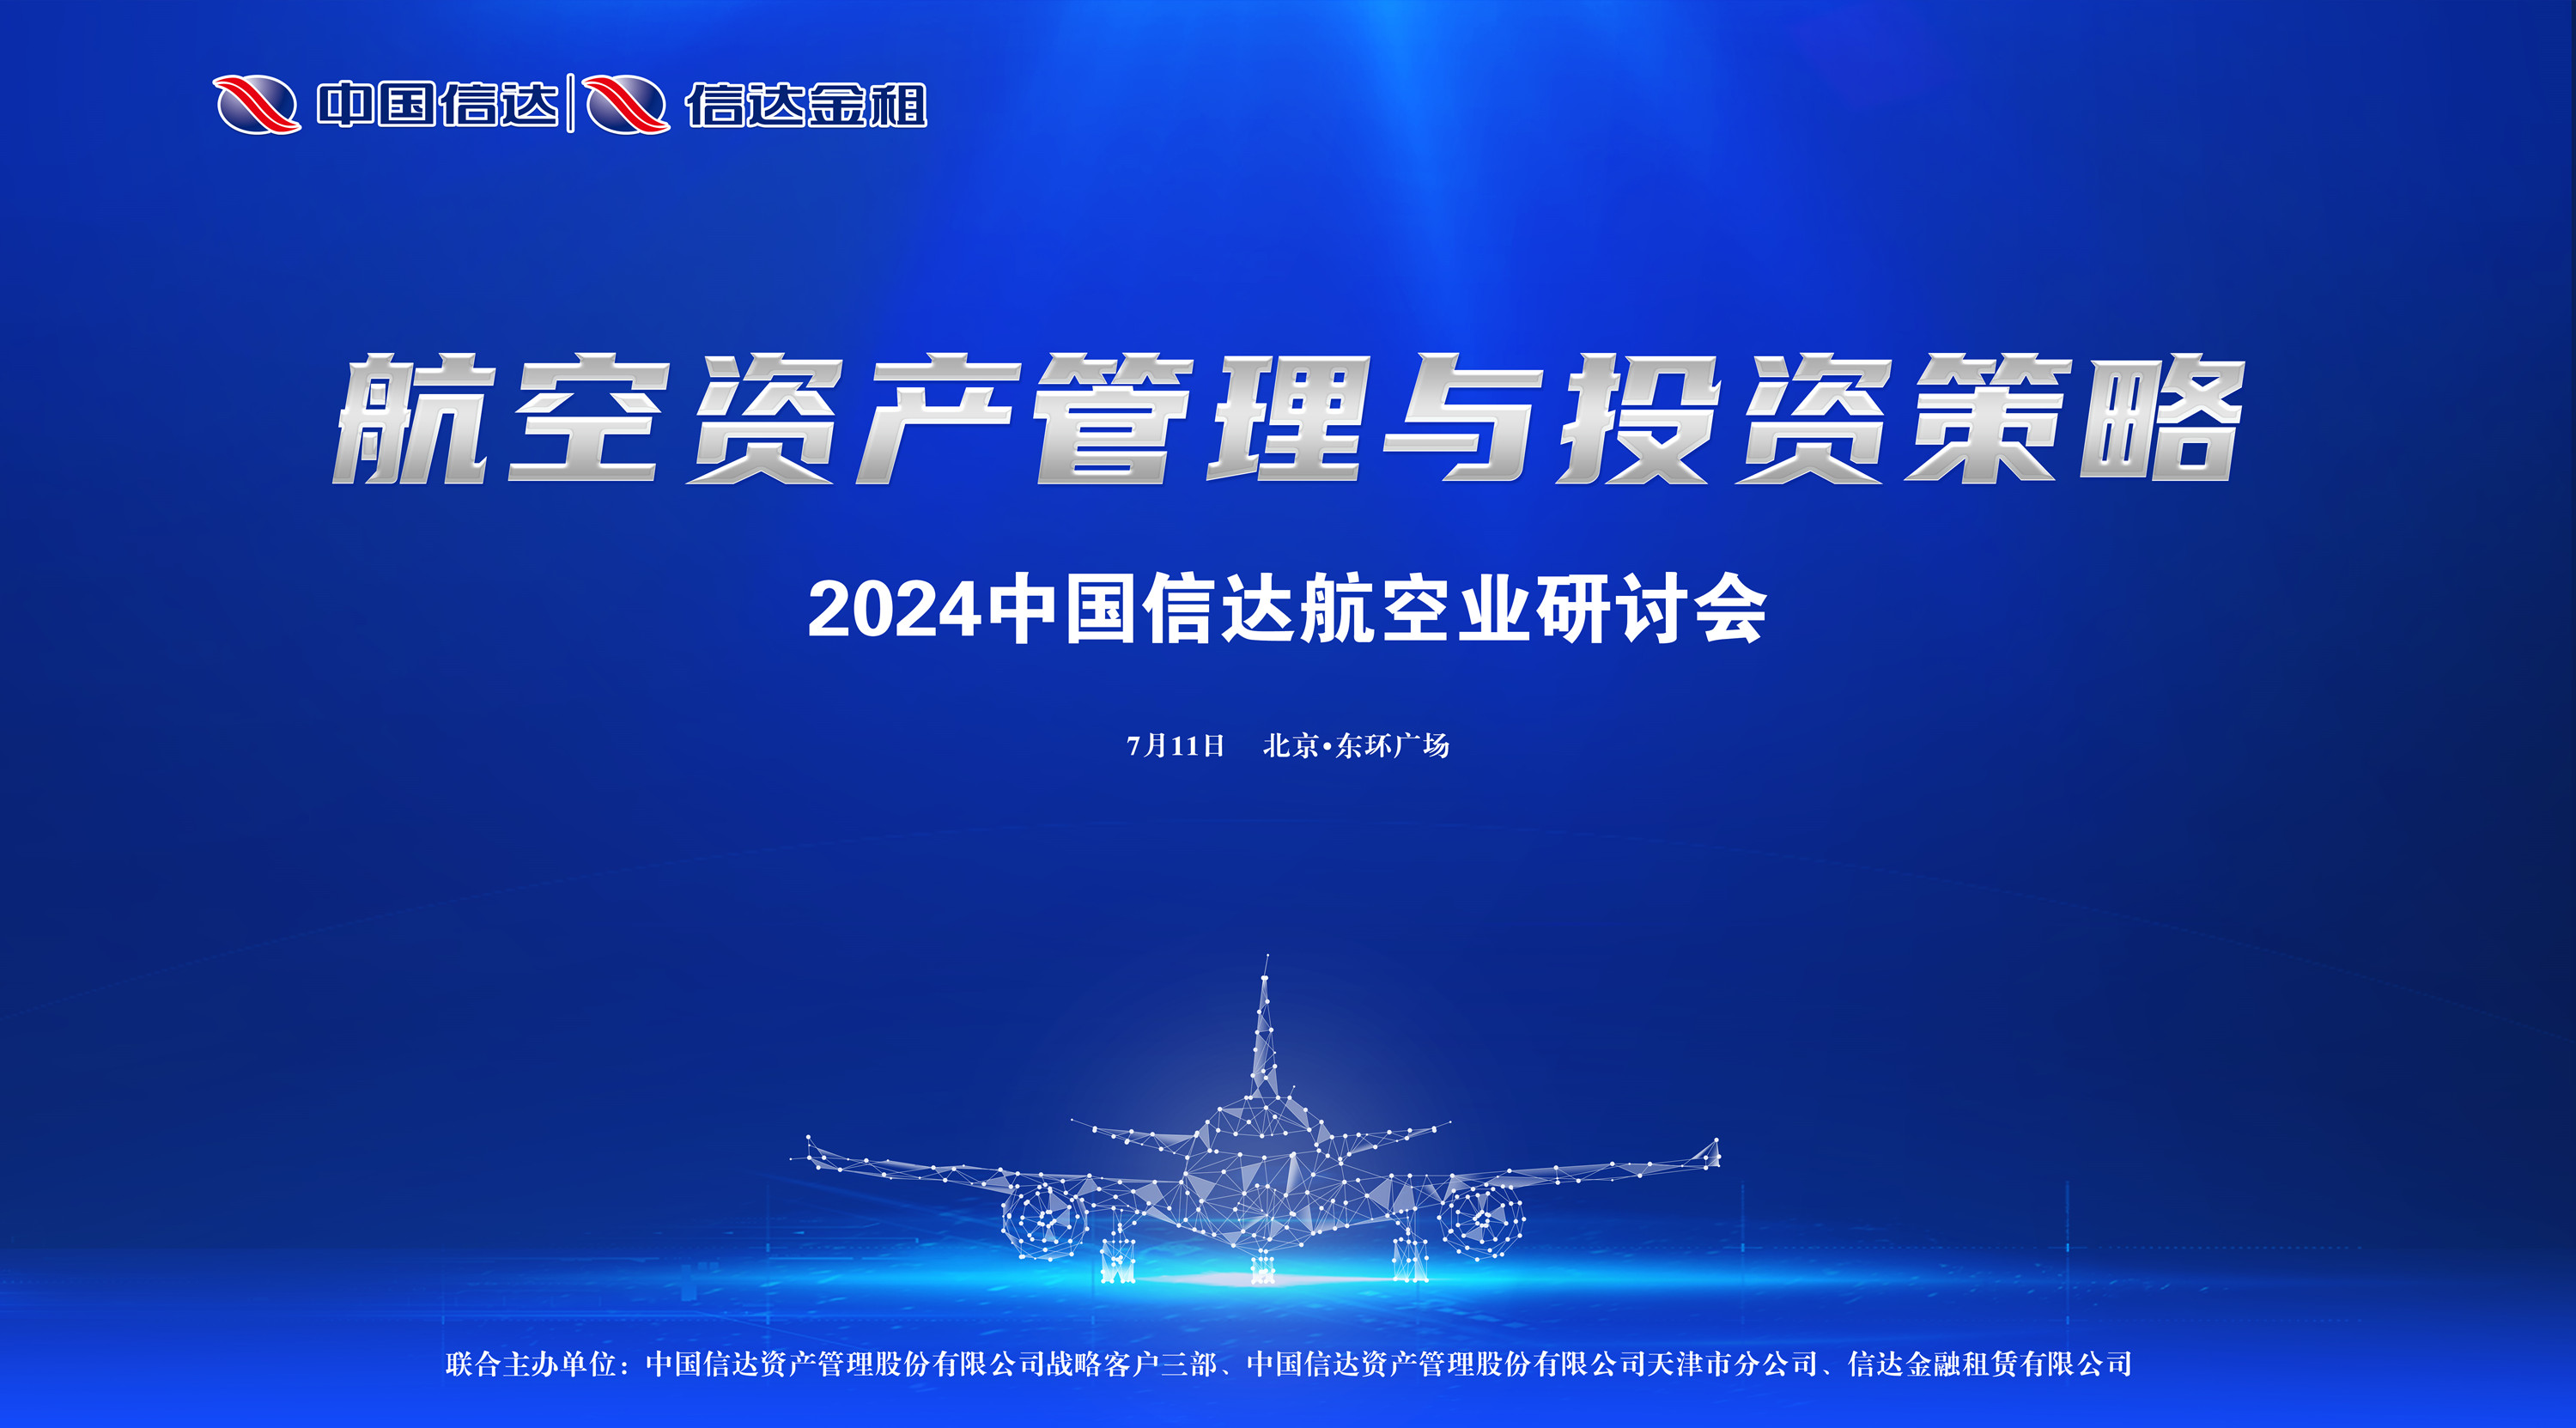 共謀航空資產投融資創新，推動航空業務高質量發展 ——中國信達航空業研討會成功舉辦